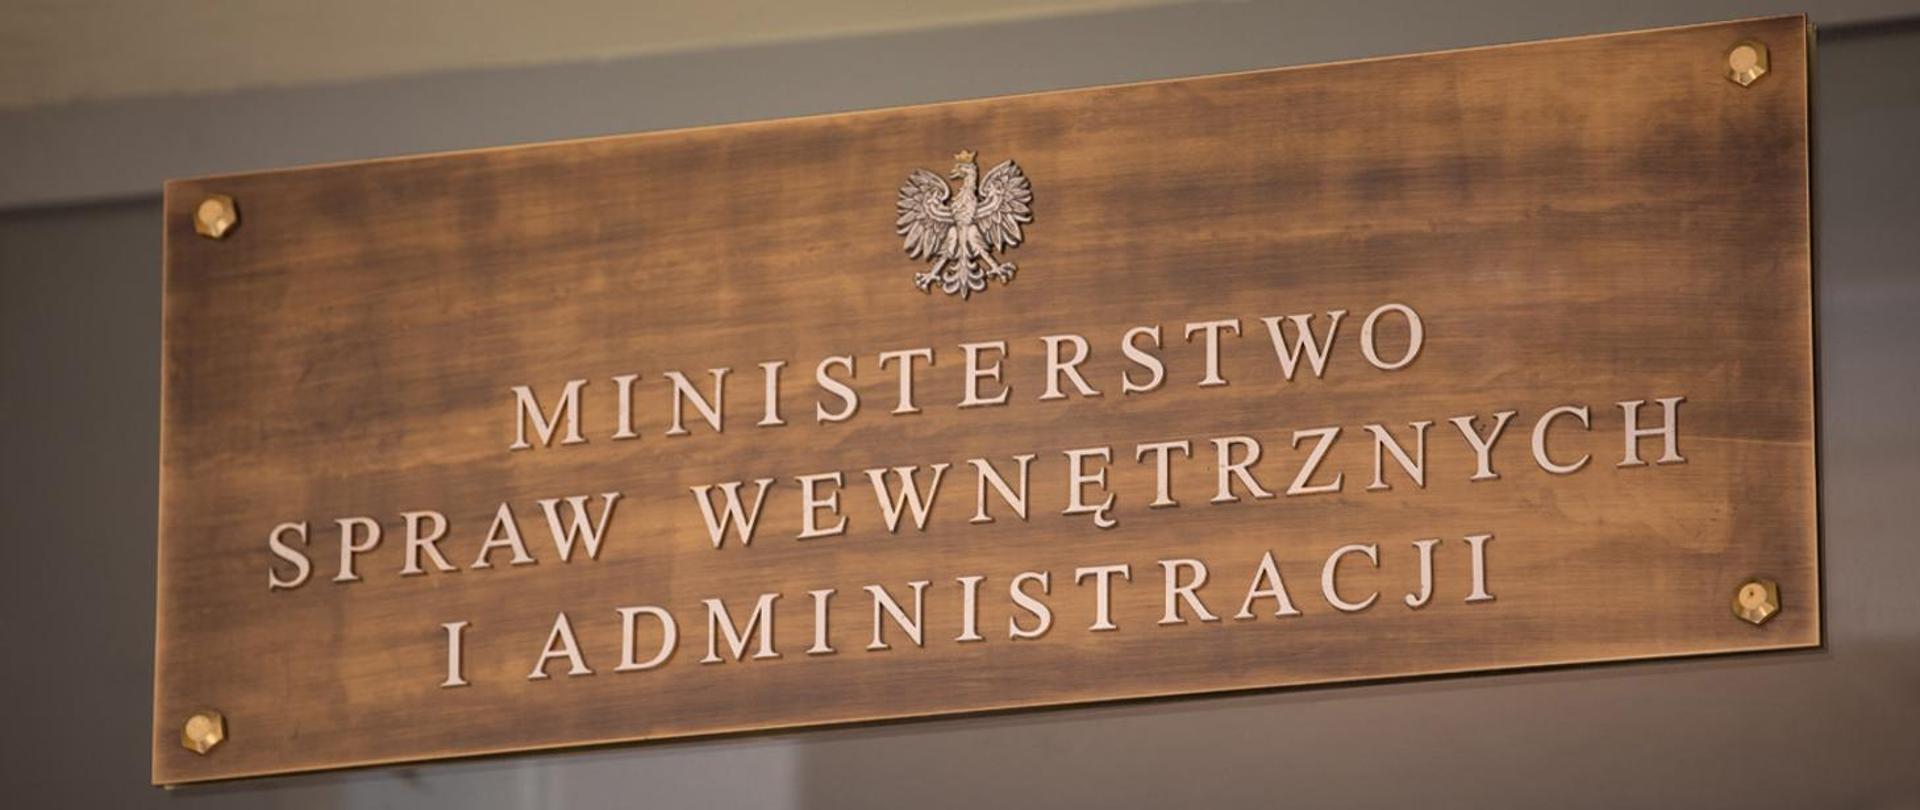 Tablica Ministerstwo Spraw Wewnętrznych i Administracji